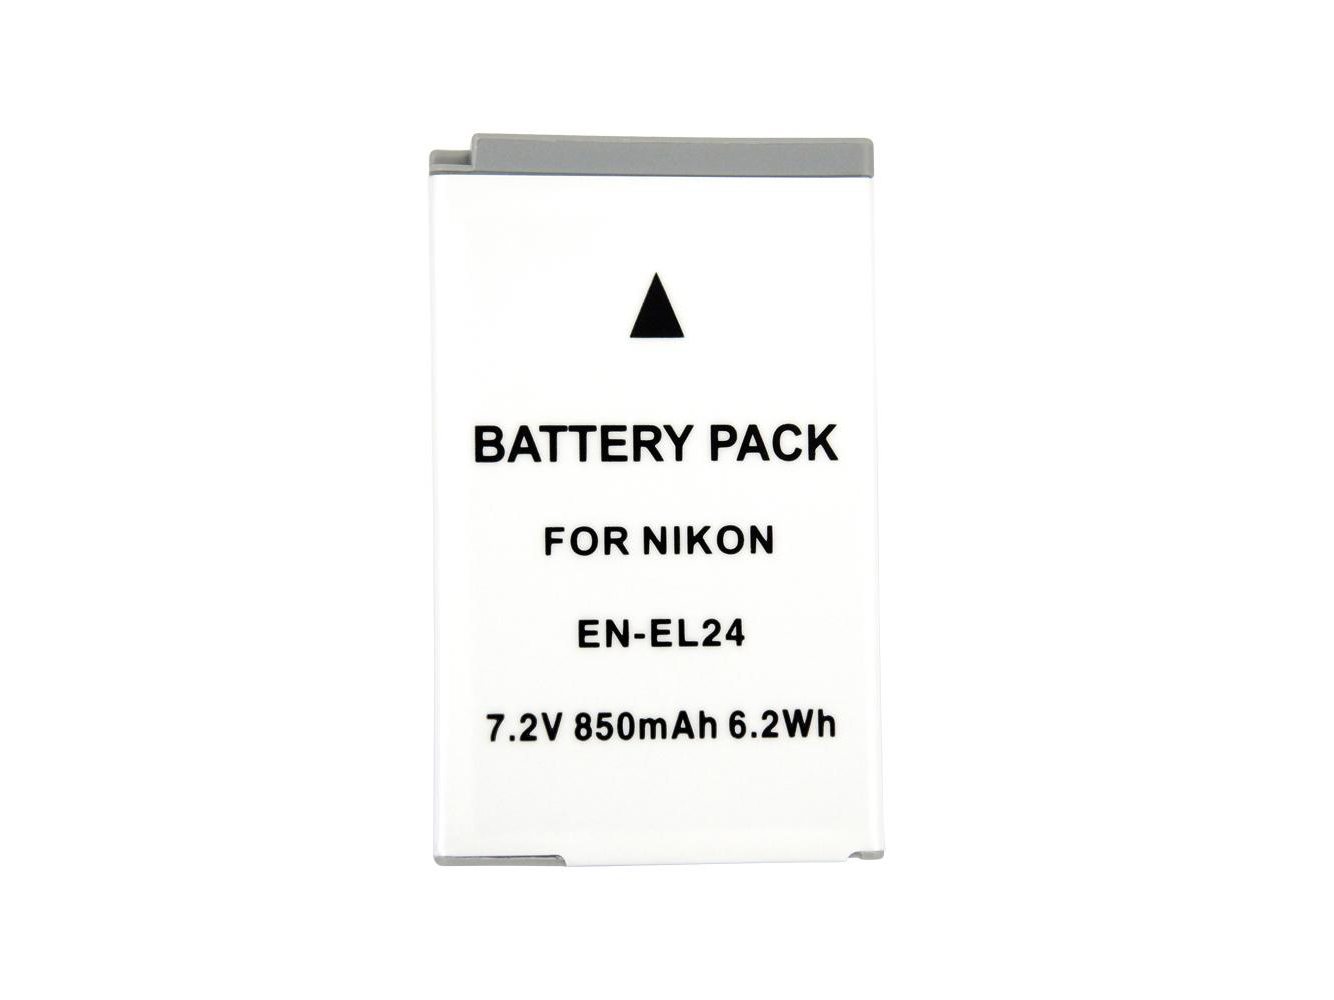 Nikon En-el24 Digital Camera Batteries For Nikon 1 J5 replacement